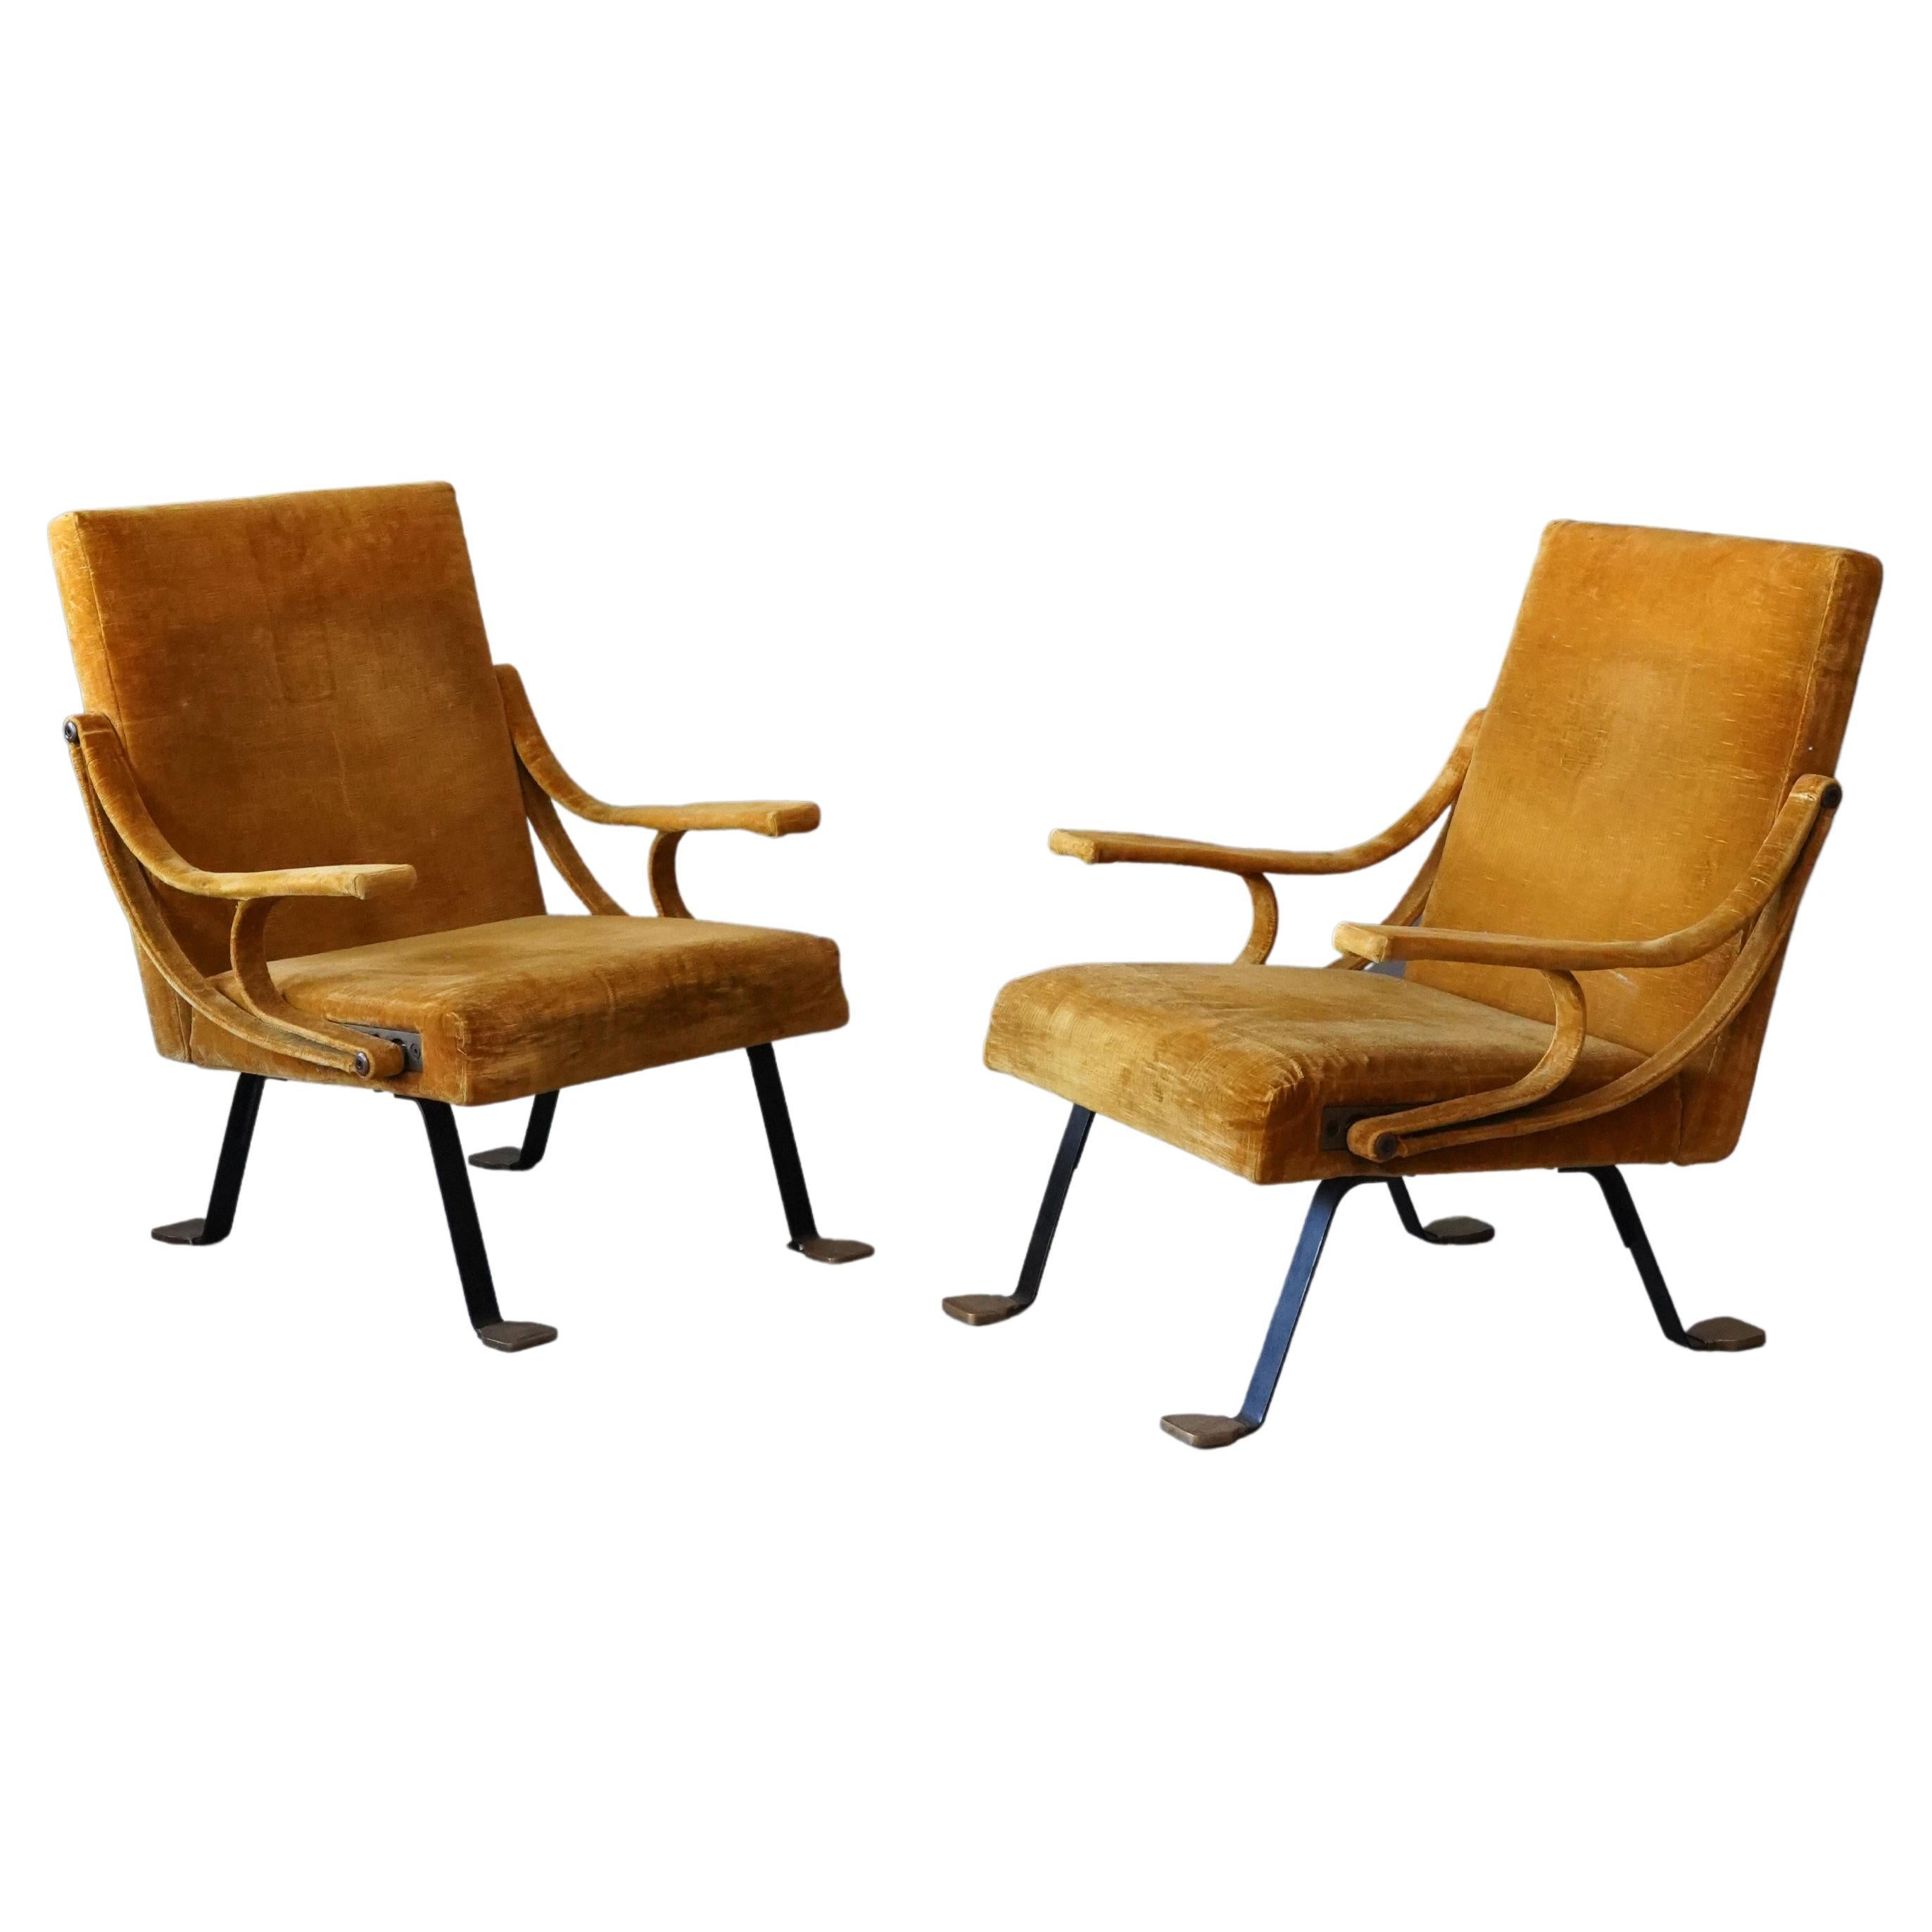 Ignazio Gardella, Lounge Chairs, Brass, Metal, Yellow Velvet, Gavina, Italy 1957